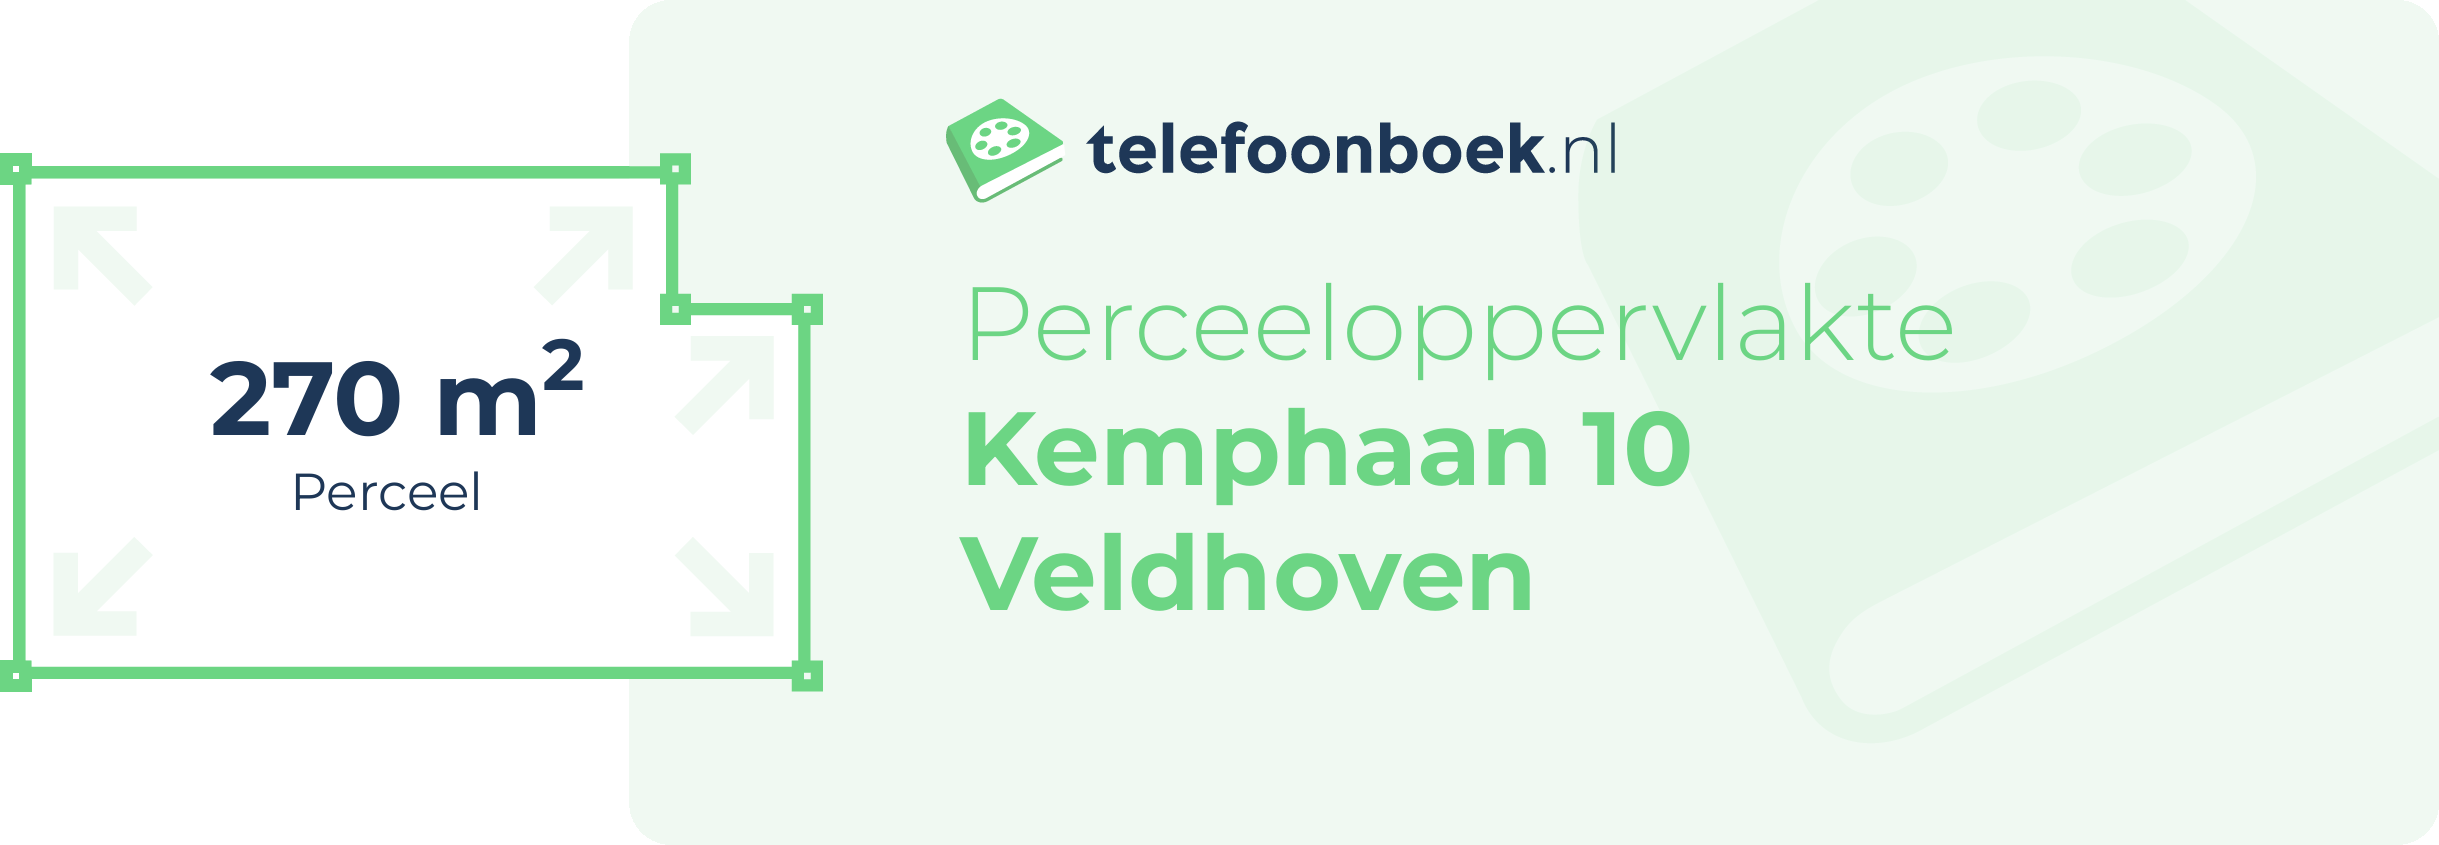 Perceeloppervlakte Kemphaan 10 Veldhoven